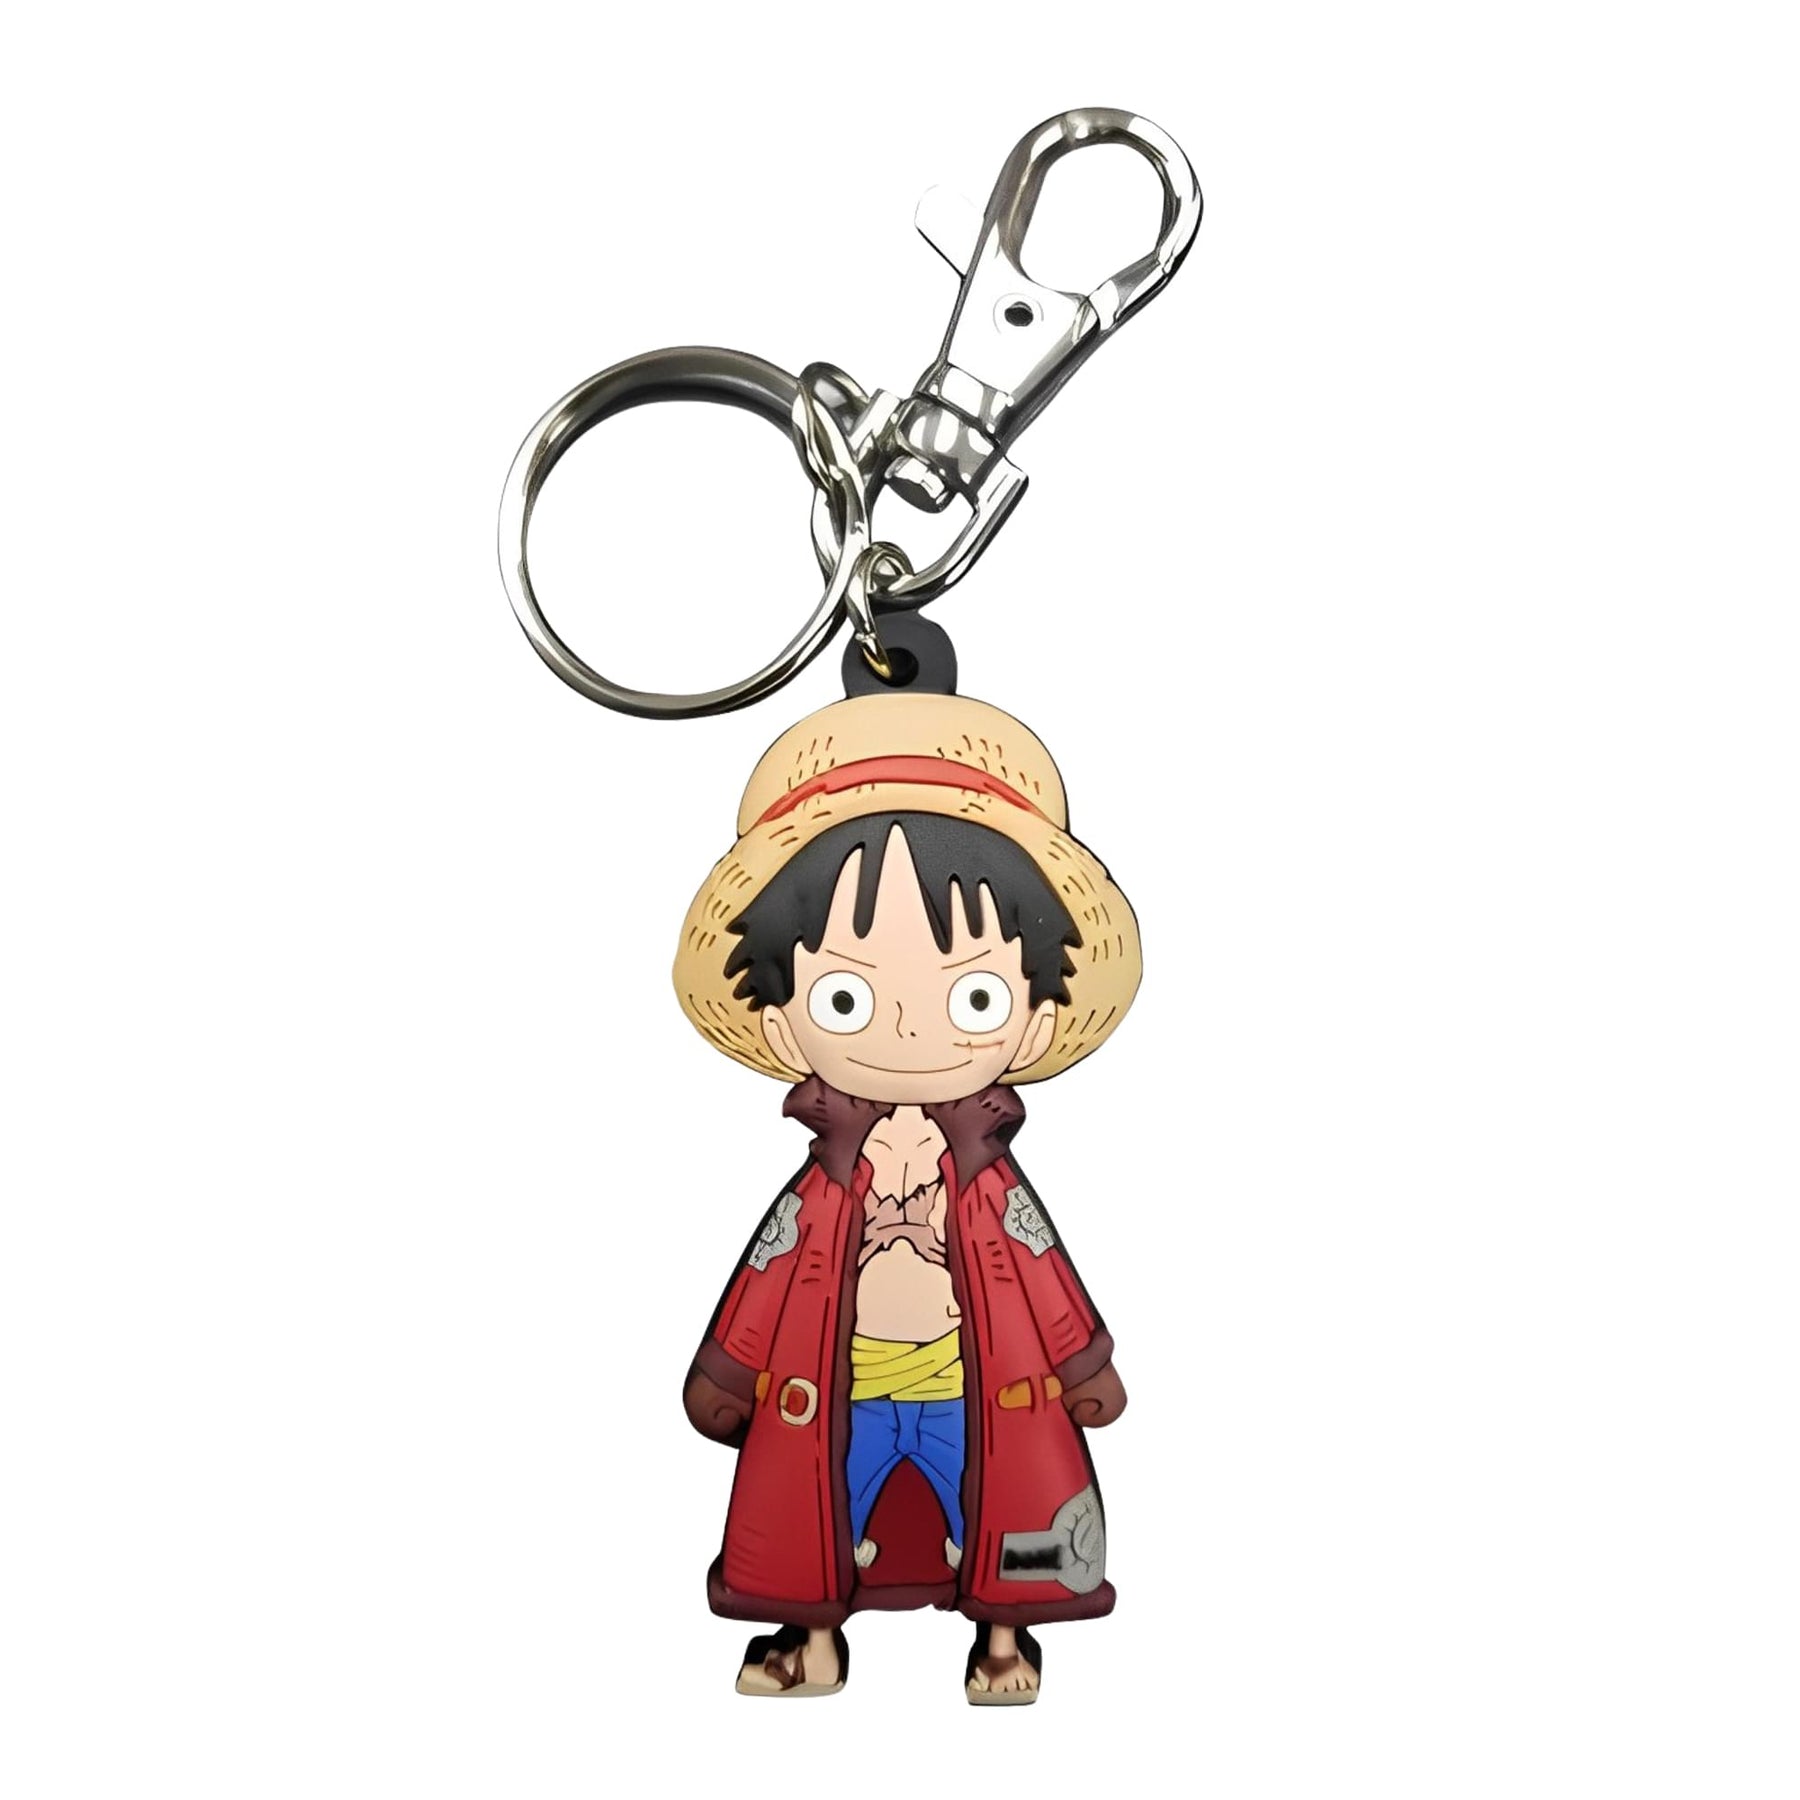 One Piece Monkey D. Luffy PVC Keychain